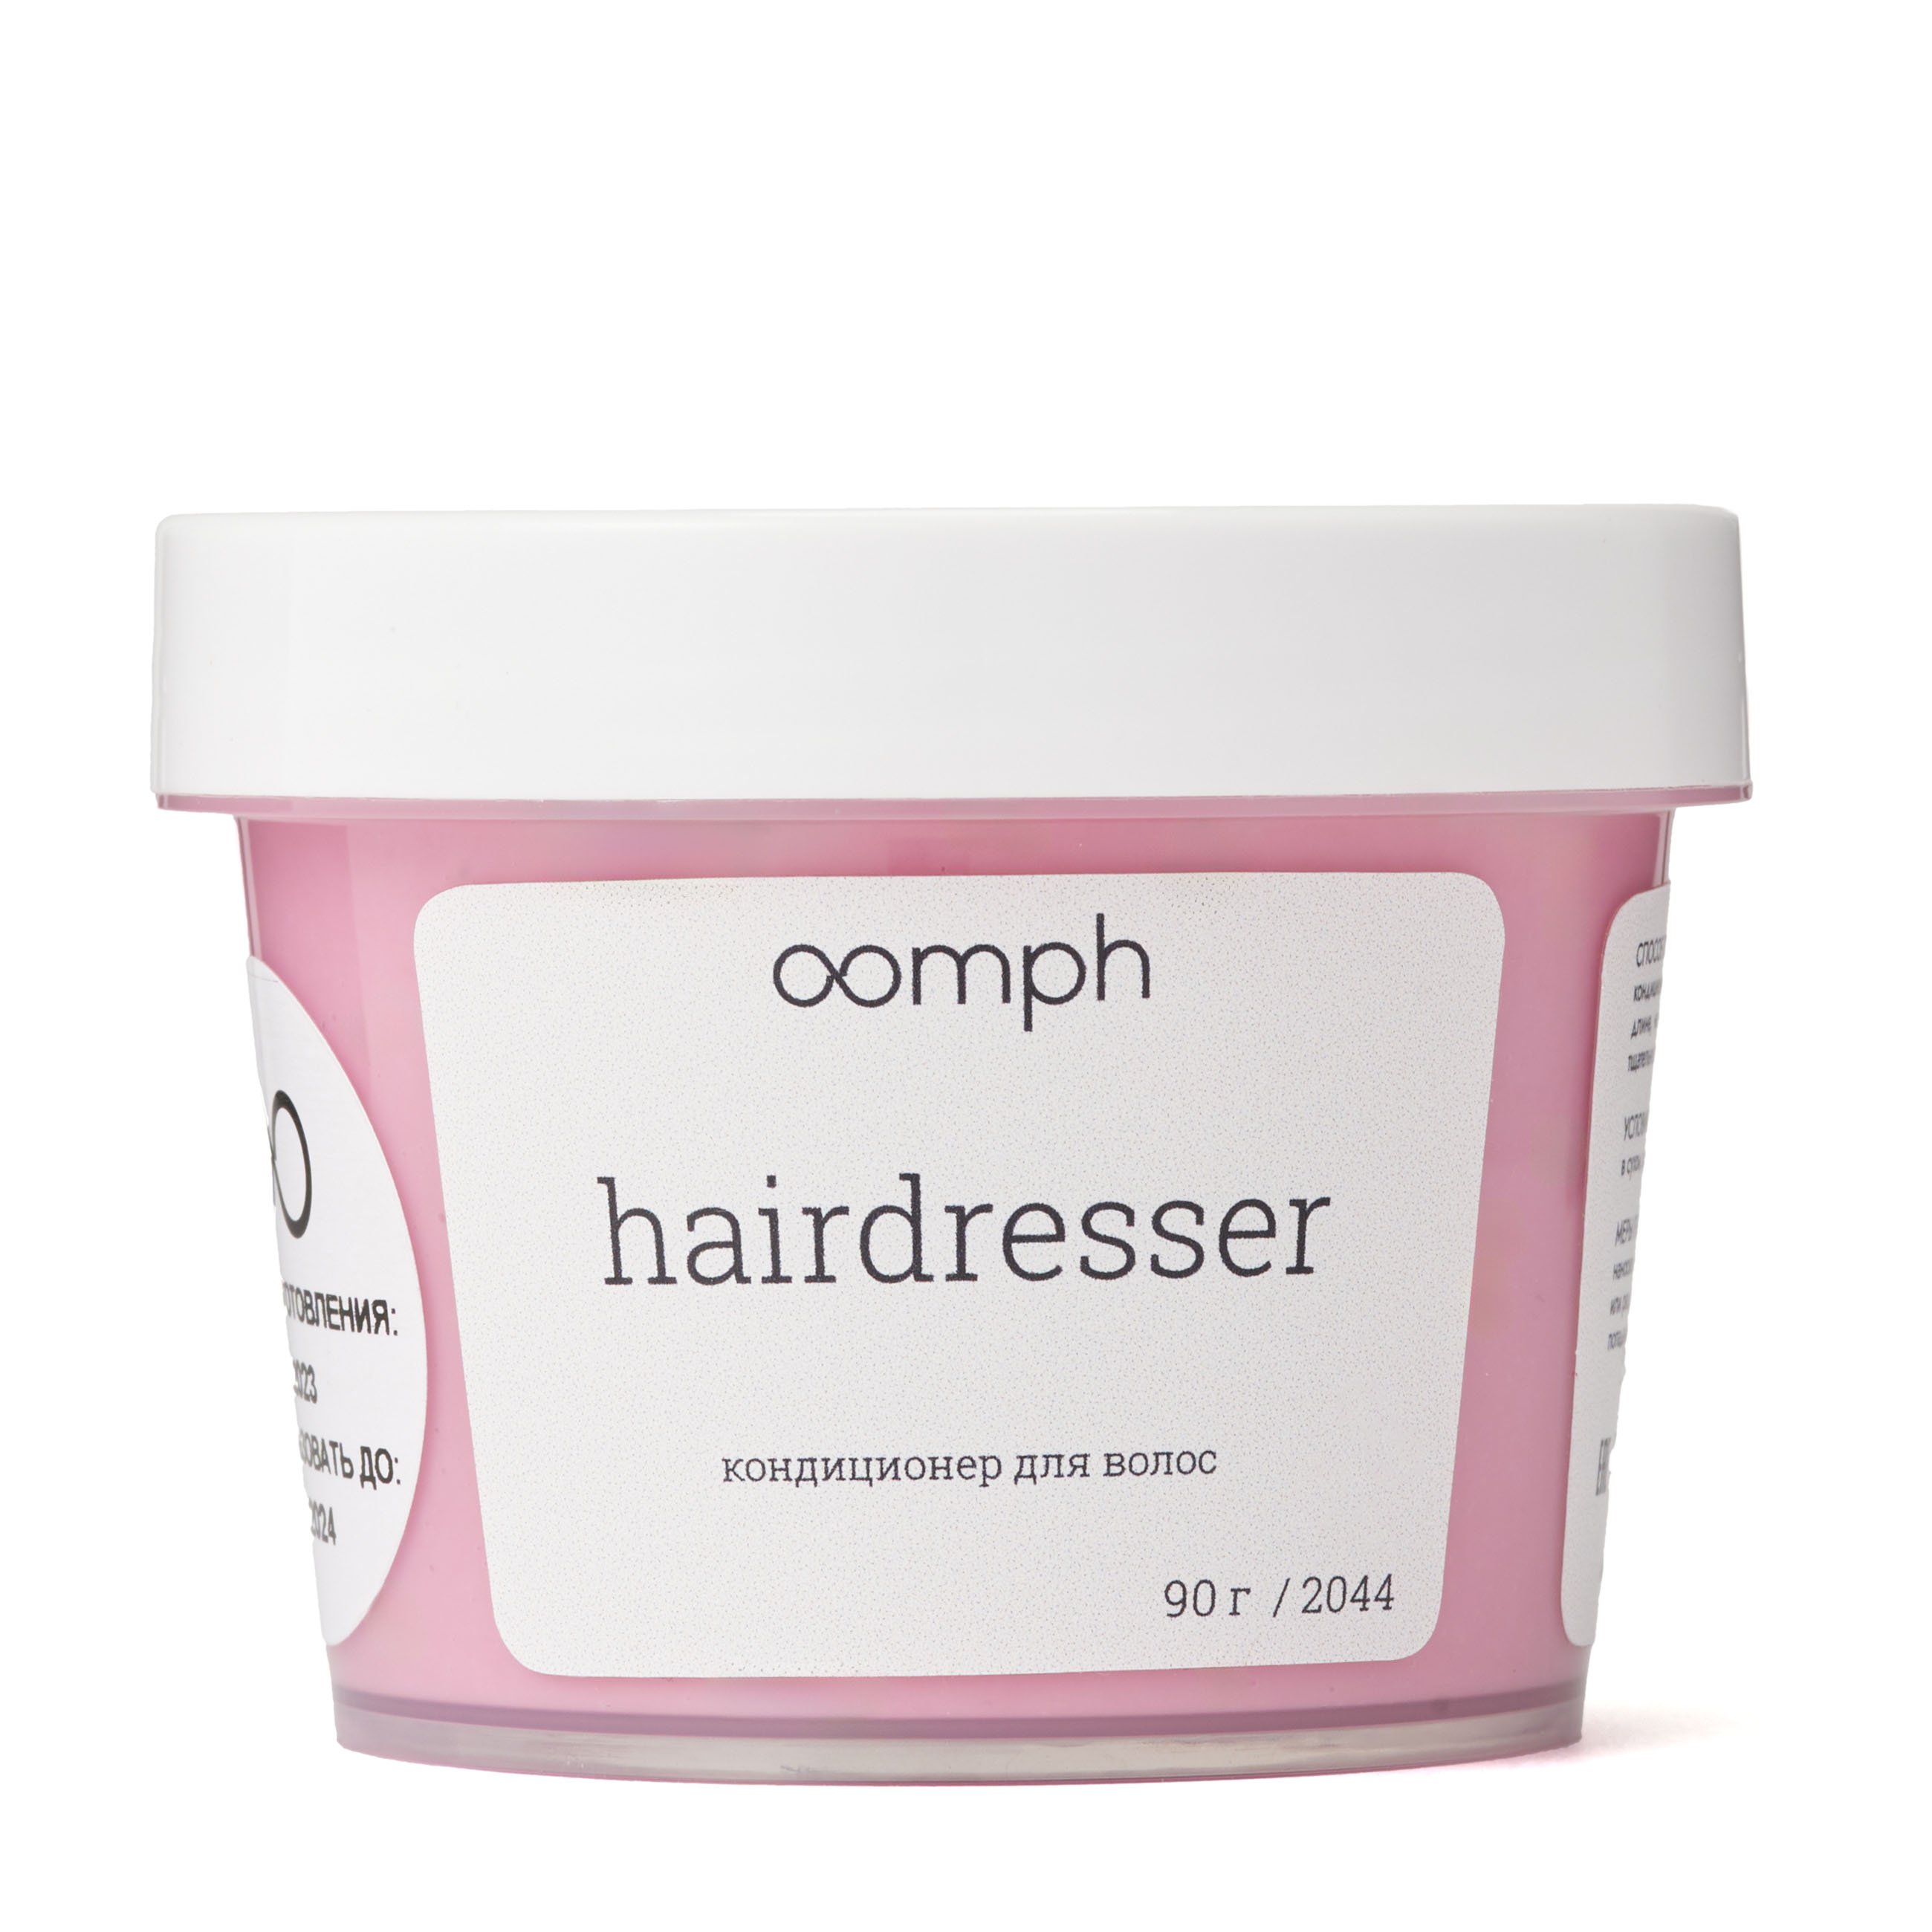 Кондиционер для волос OOMPH Hairdresser 90г la sultane de saba масло для тела лотос и франжипани